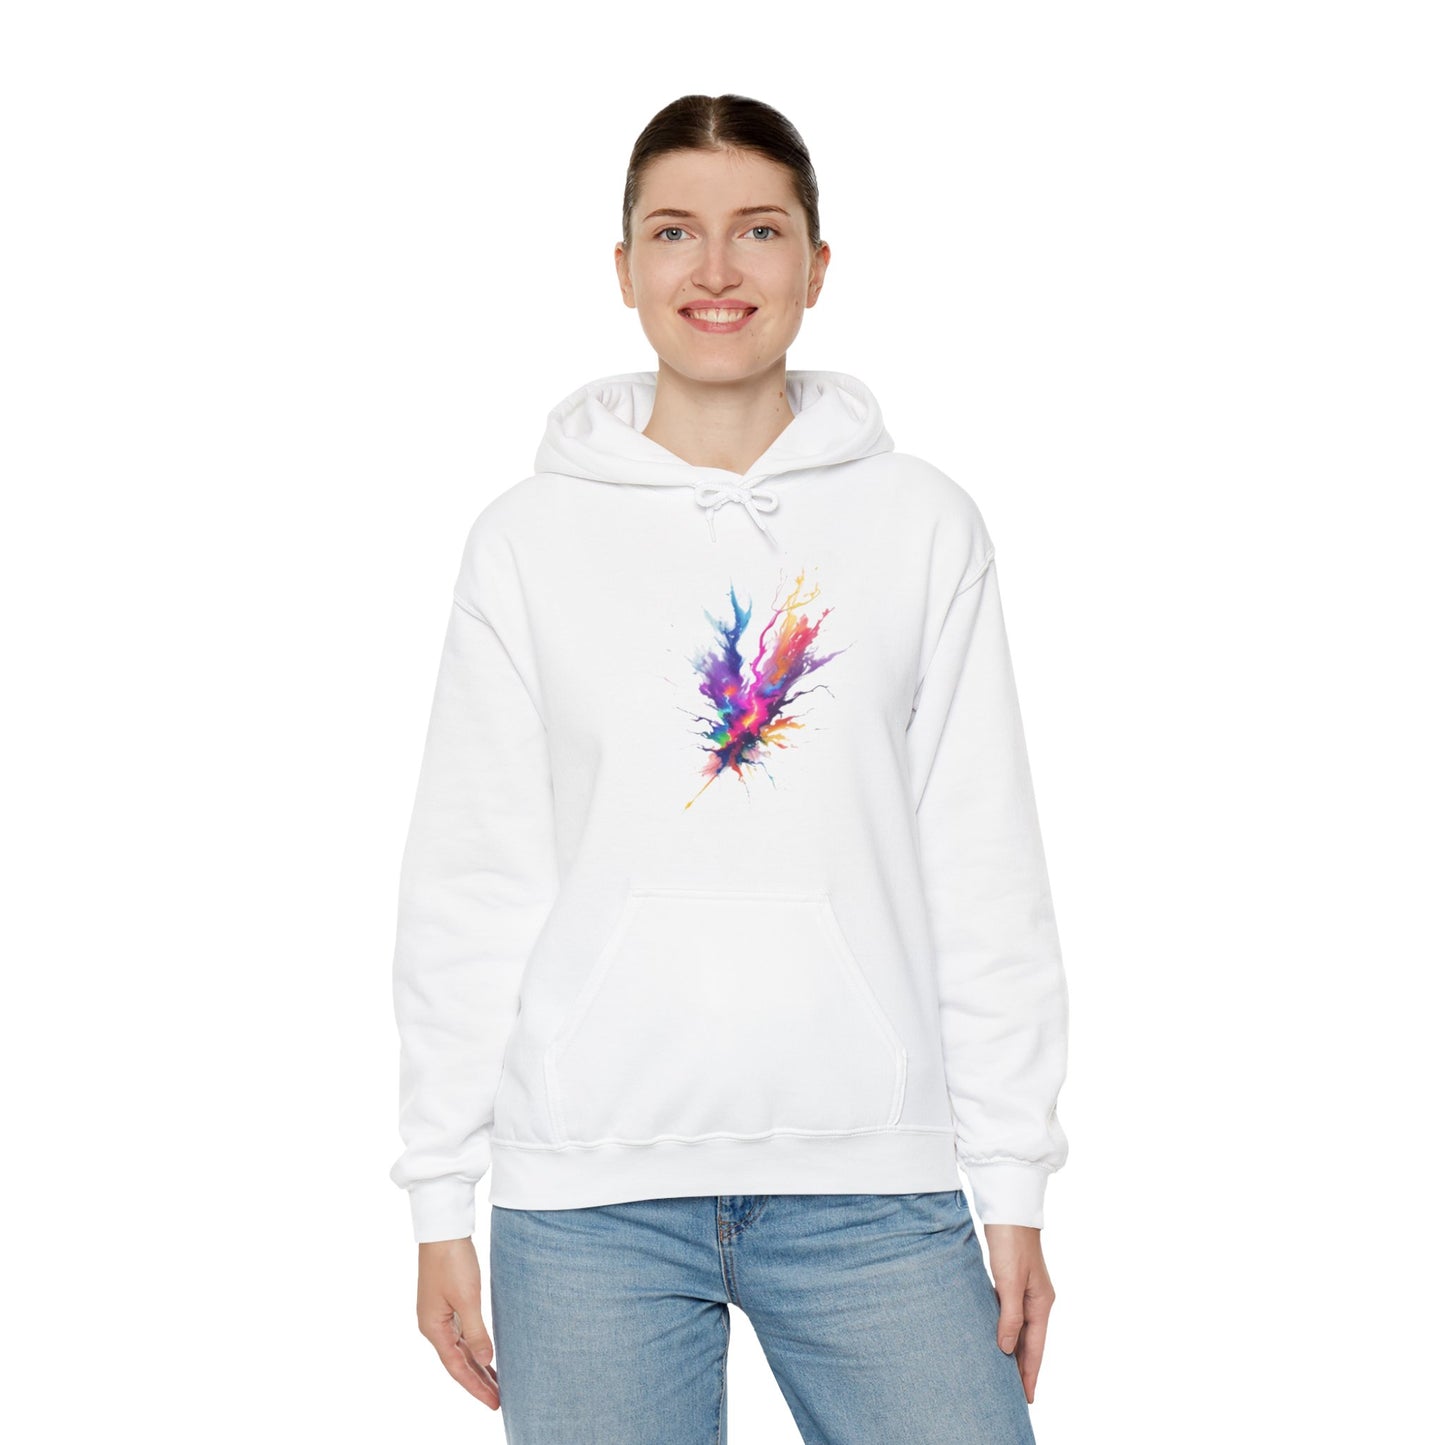 Colourful Lightning Bolt - Unisex Hooded Sweatshirt